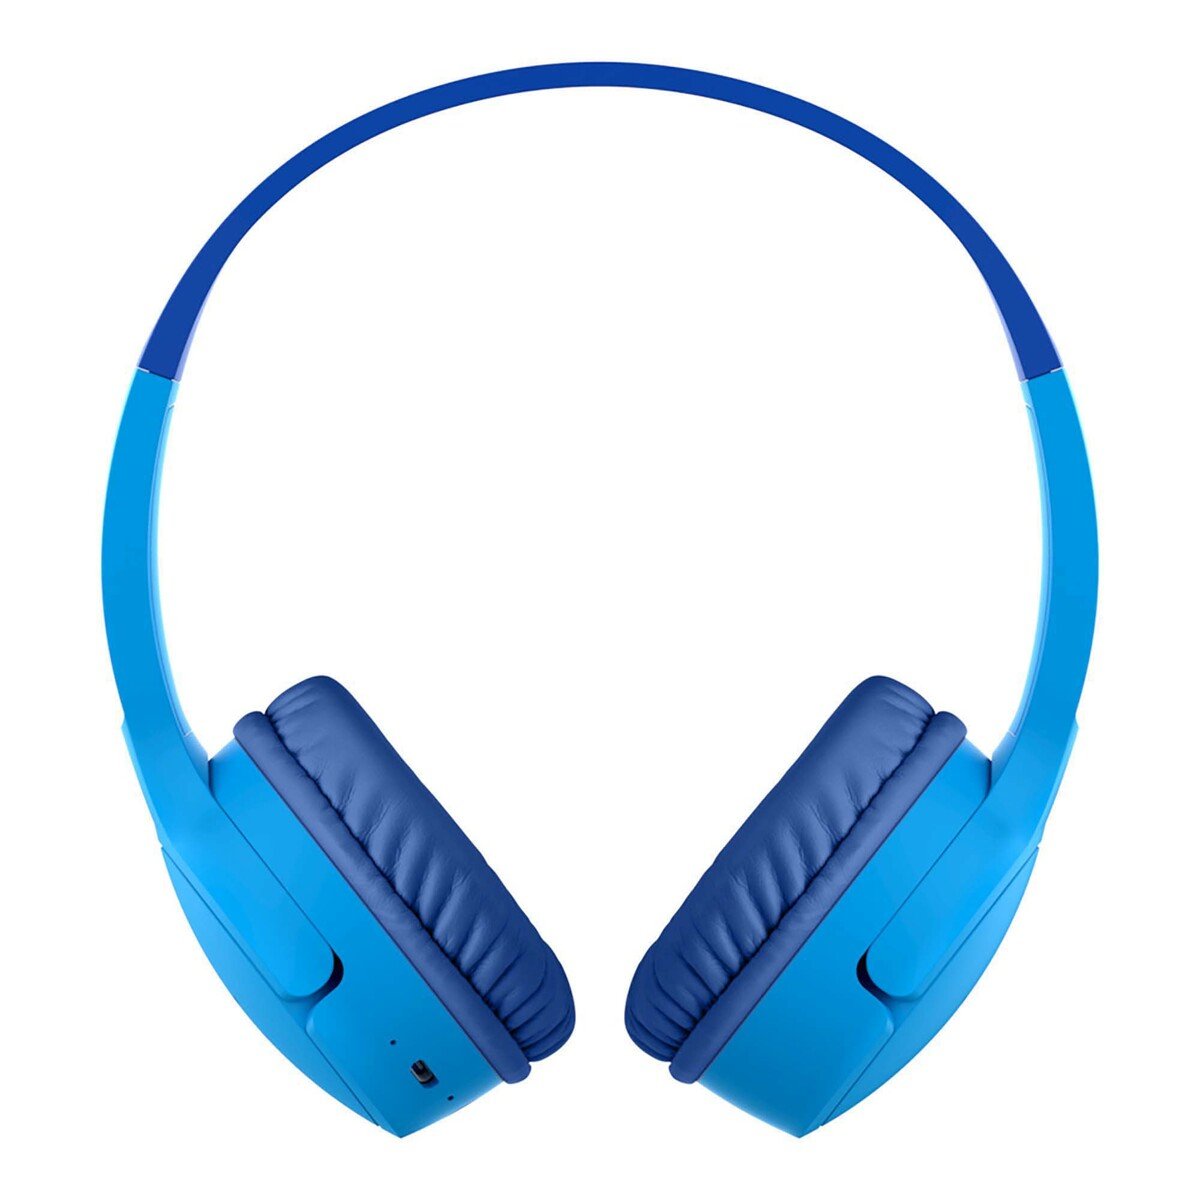 سماعات راس لاسلكية للأطفال  بلكين كيدز  - اللون أزرق AUD002BT